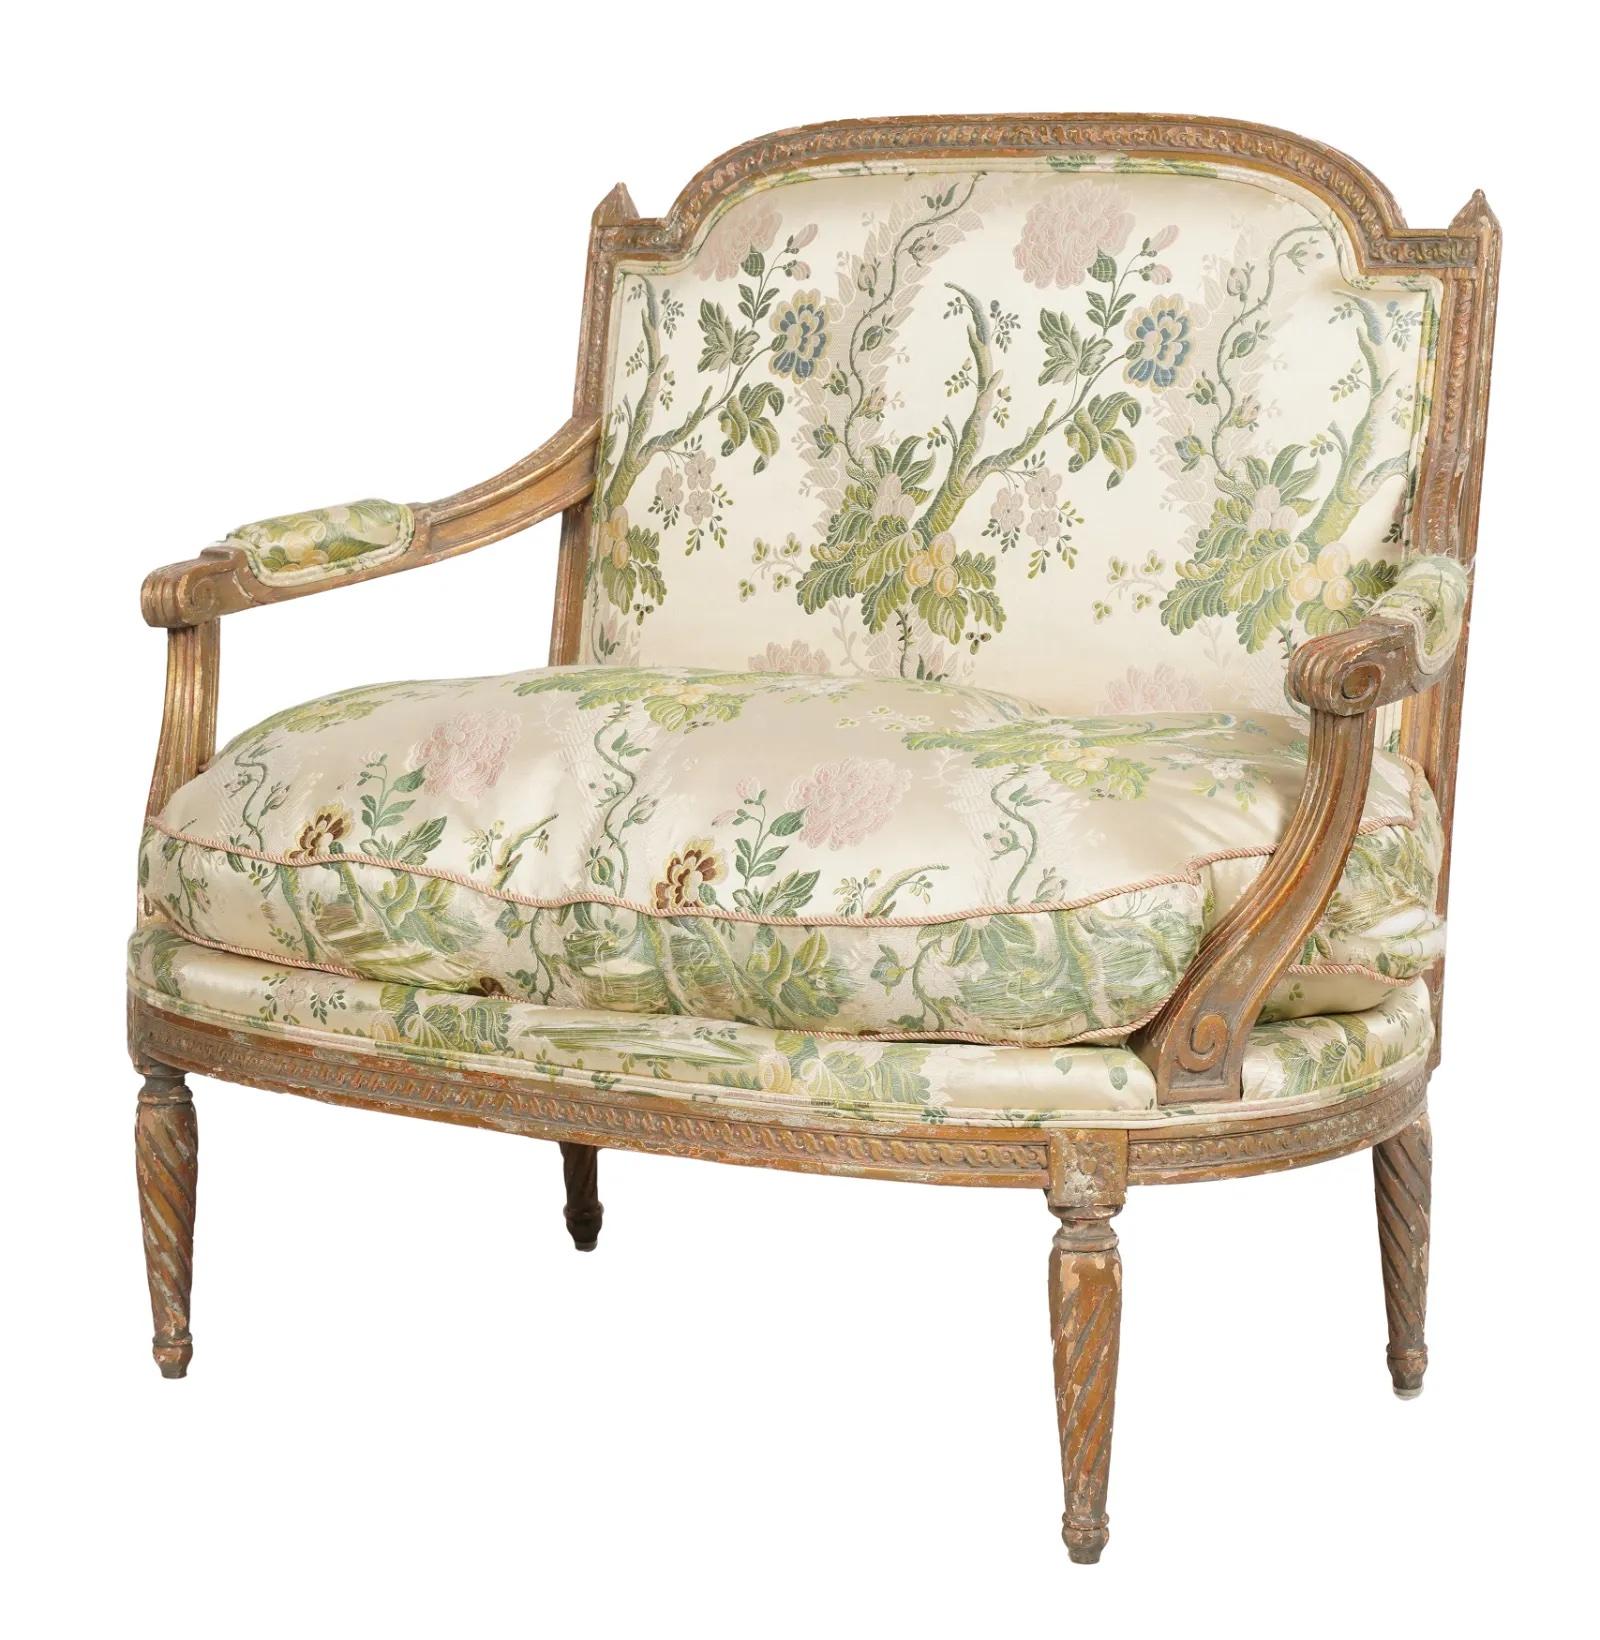 Magnifique canapé en bois doré de style Louis XVI de la fin du XIXe siècle, qui conserve encore des vestiges de la finition en gesso doré d'origine. Le cadre est orné de détails complexes sculptés à la main. La tapisserie d'ameublement en damas de